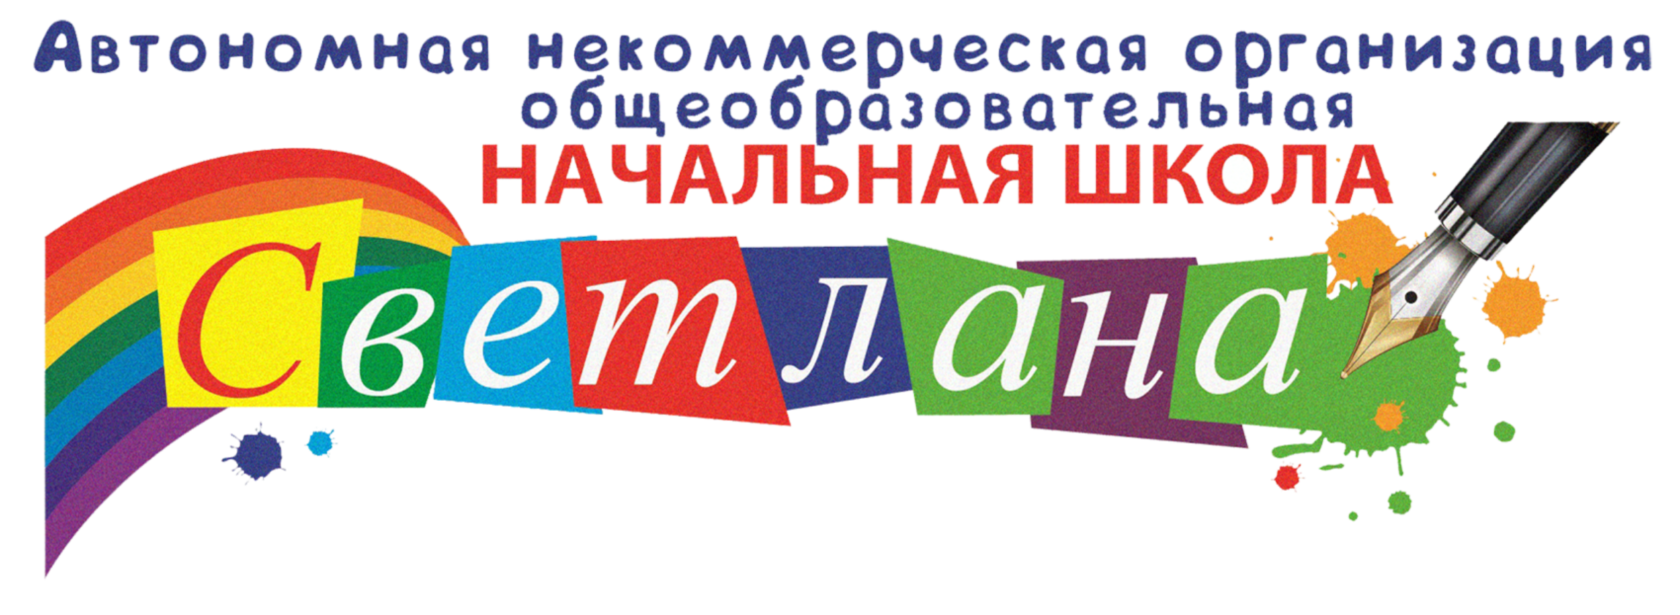 Частная школа "Светлана" в Воронеже